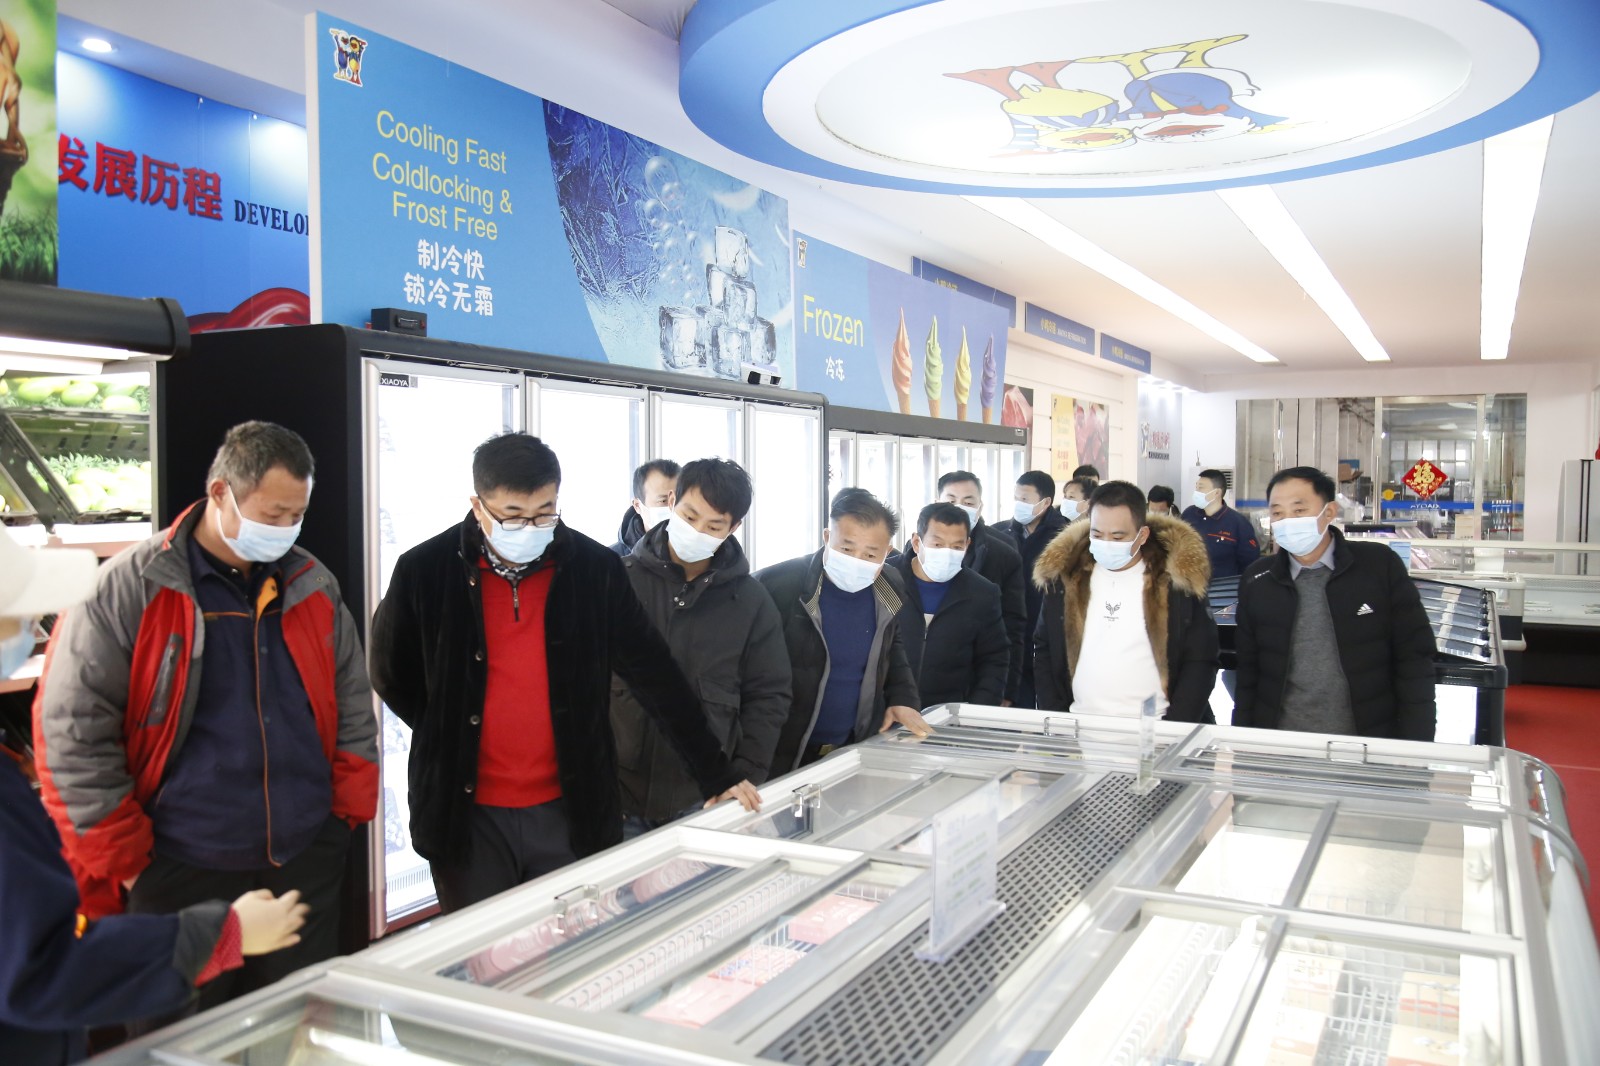 日照银行济南分行、上海聚均科技领导莅临小鸭参观交流 - 新闻中心 - 小鸭集团